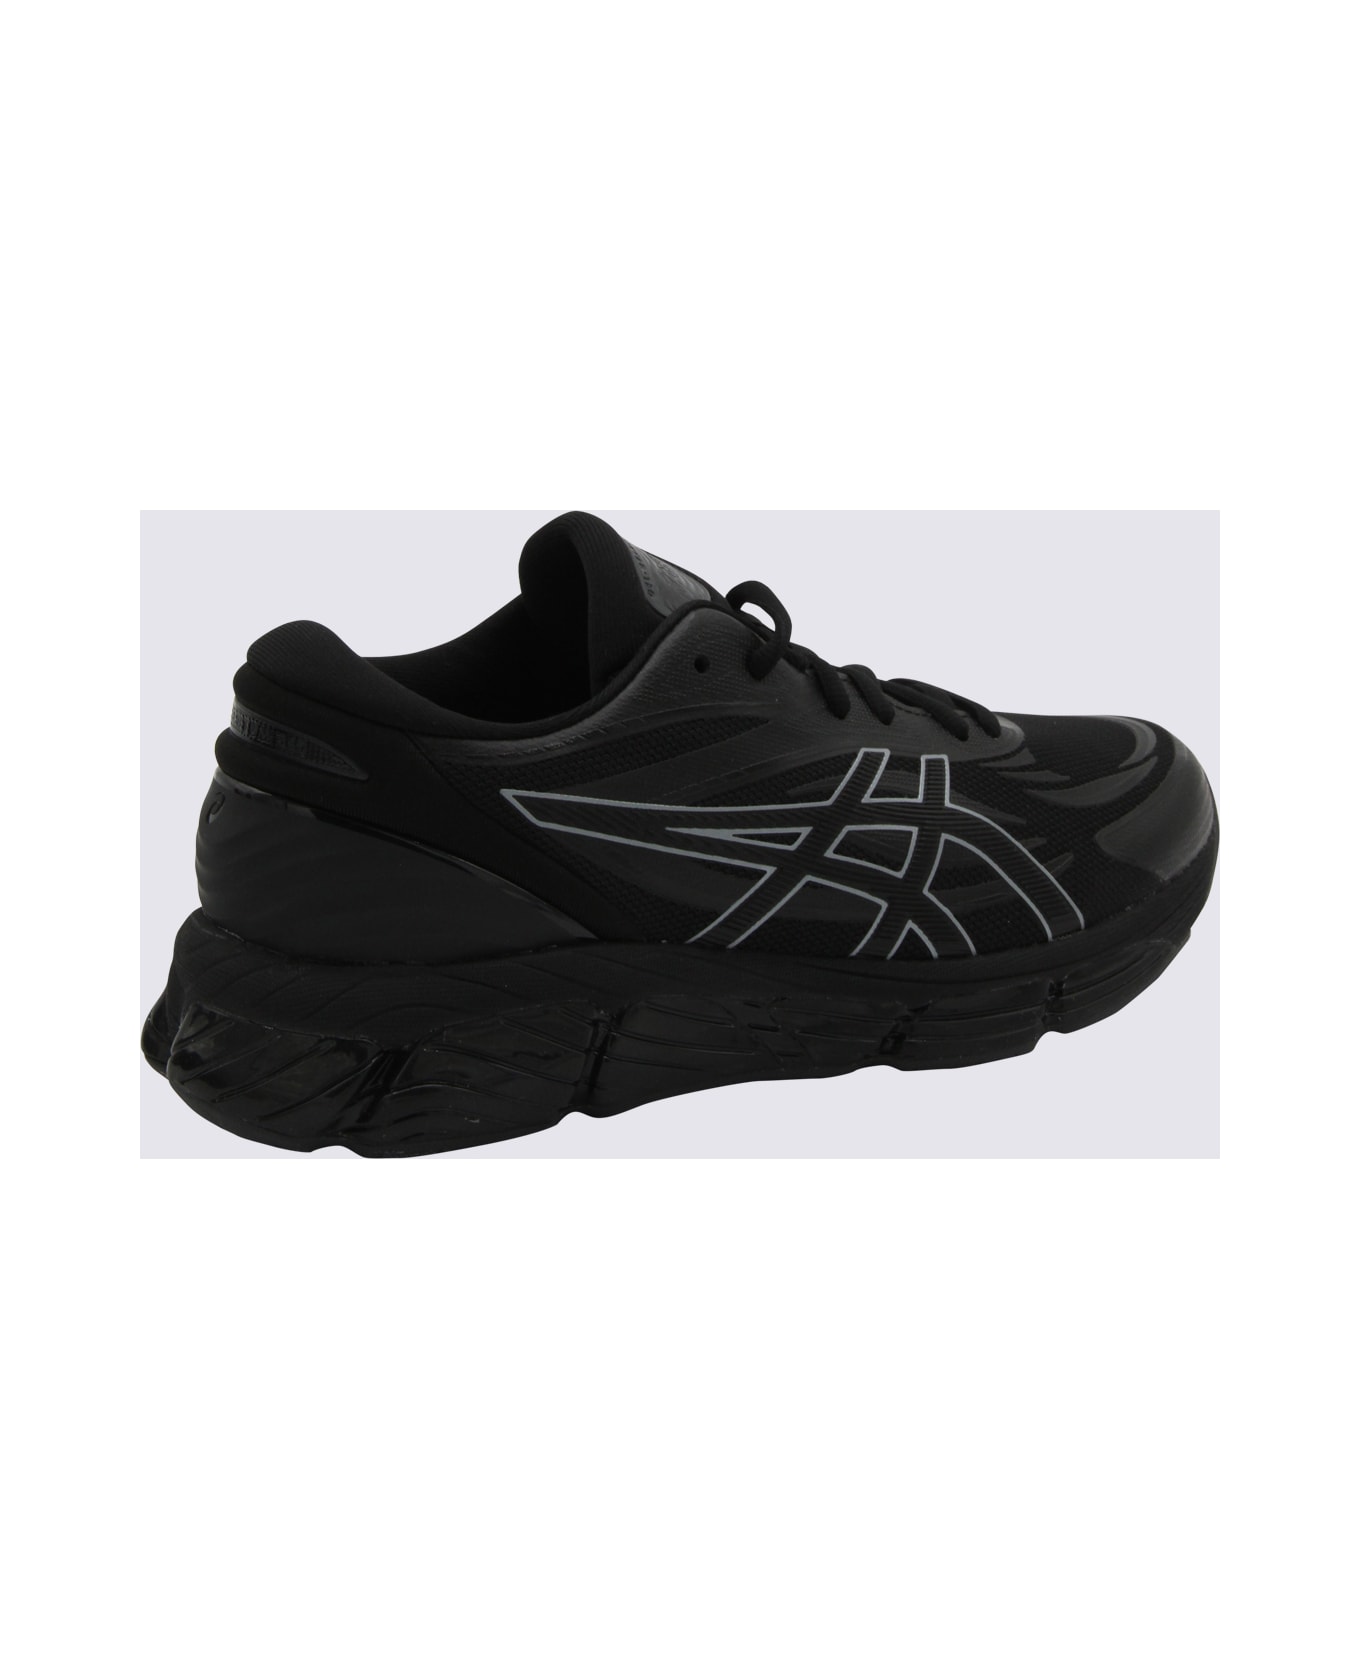 Asics Black Gel Quantun 360 Sneakers - Black